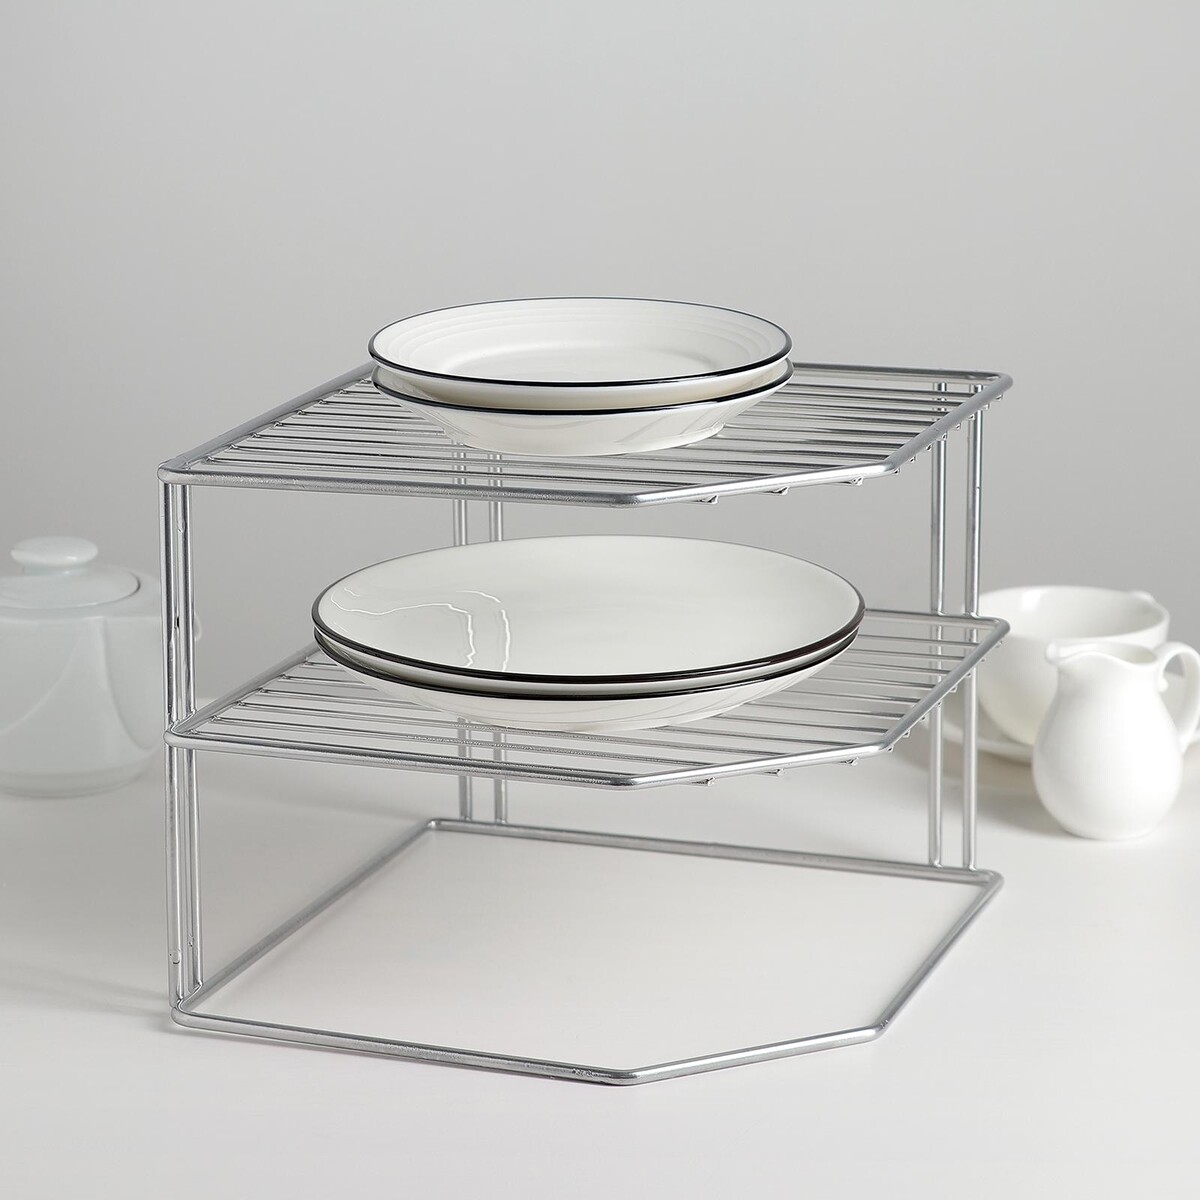 Подставка для посуды, 2 яруса, 25×25×20 см, цвет хром подставка вращающаяся для кофейных капсул 11×11×32 см хром